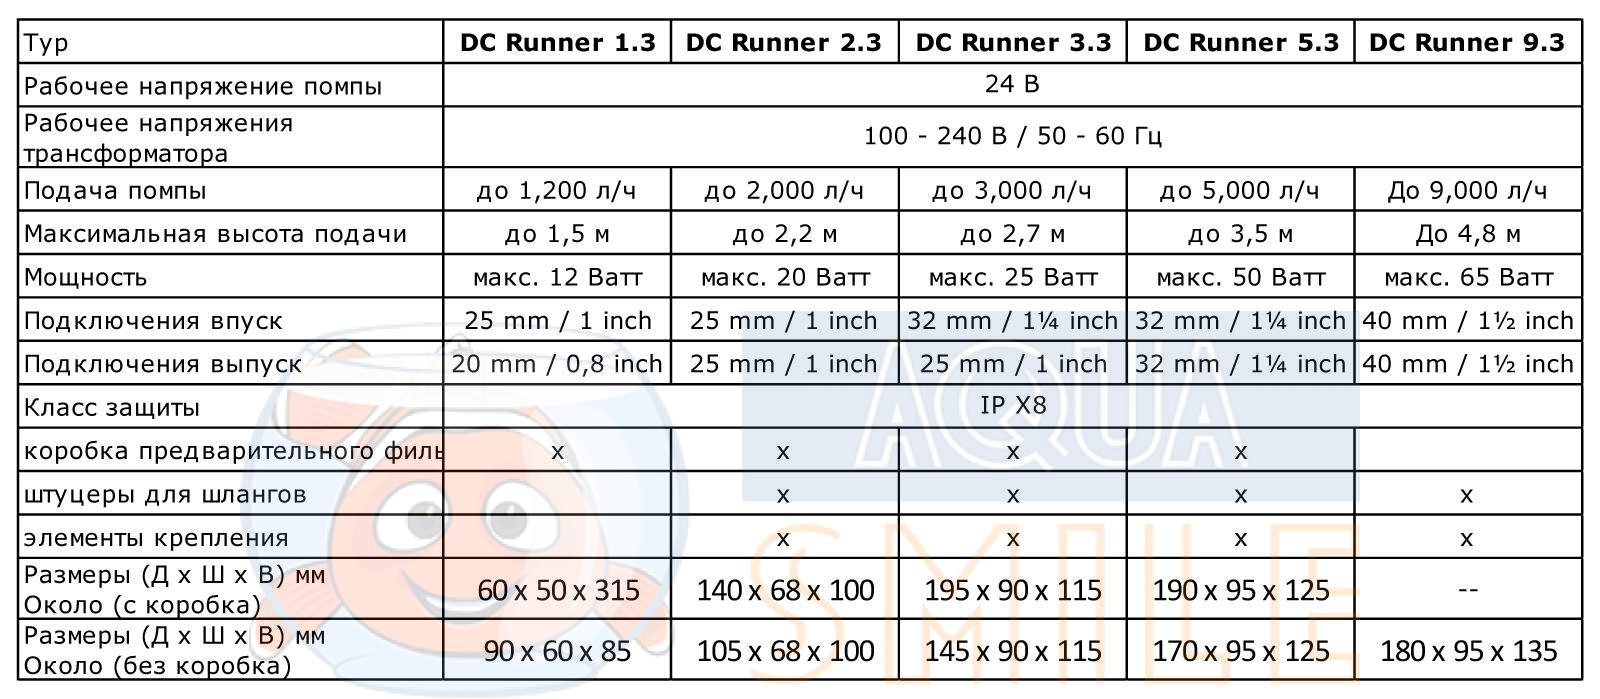 Универсальный насос для аквариума Aqua Medic DC Runner 1.3 таблица